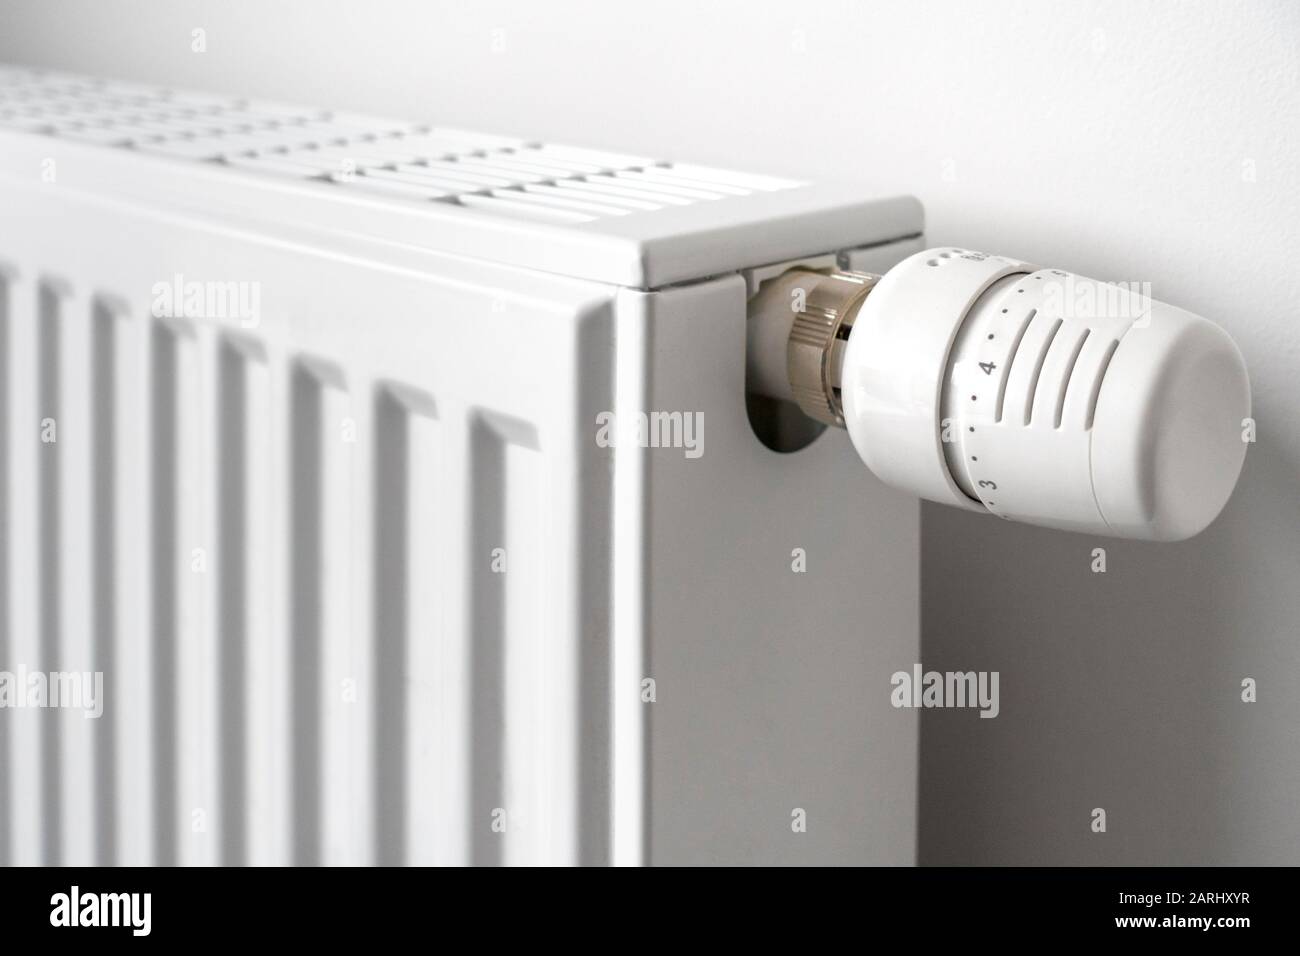 Gros plan de la soupape thermostatique du radiateur / TVR installée sur le radiateur du système de chauffage à eau chaude domestique pour contrôler la température d'une pièce Banque D'Images